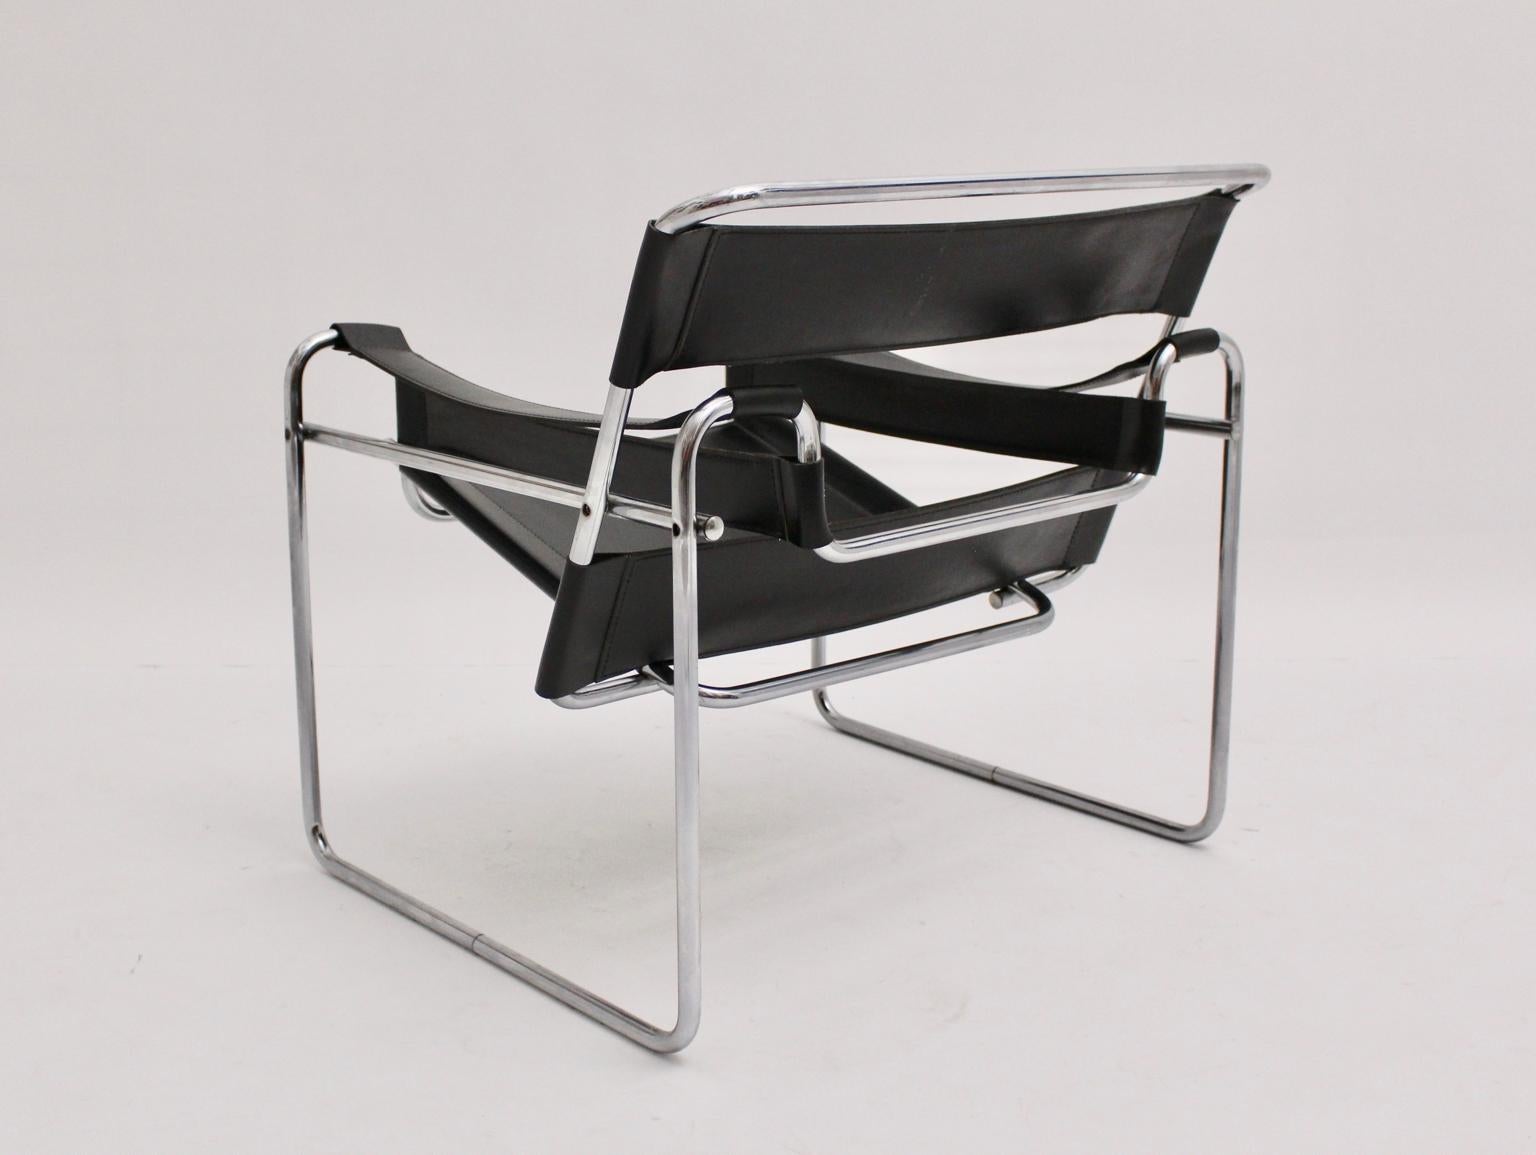 Bauhaus Vintage Stahlrohr Sessel mit schwarzem Leder Modell Wassily wurde von Marcel Breuer 1925 - 27 entworfen und wahrscheinlich in Italien um 1970 ausgeführt. Es gibt keine Herstellerkennzeichen. 
Das schwarze Leder weist eine tolle Patina auf,